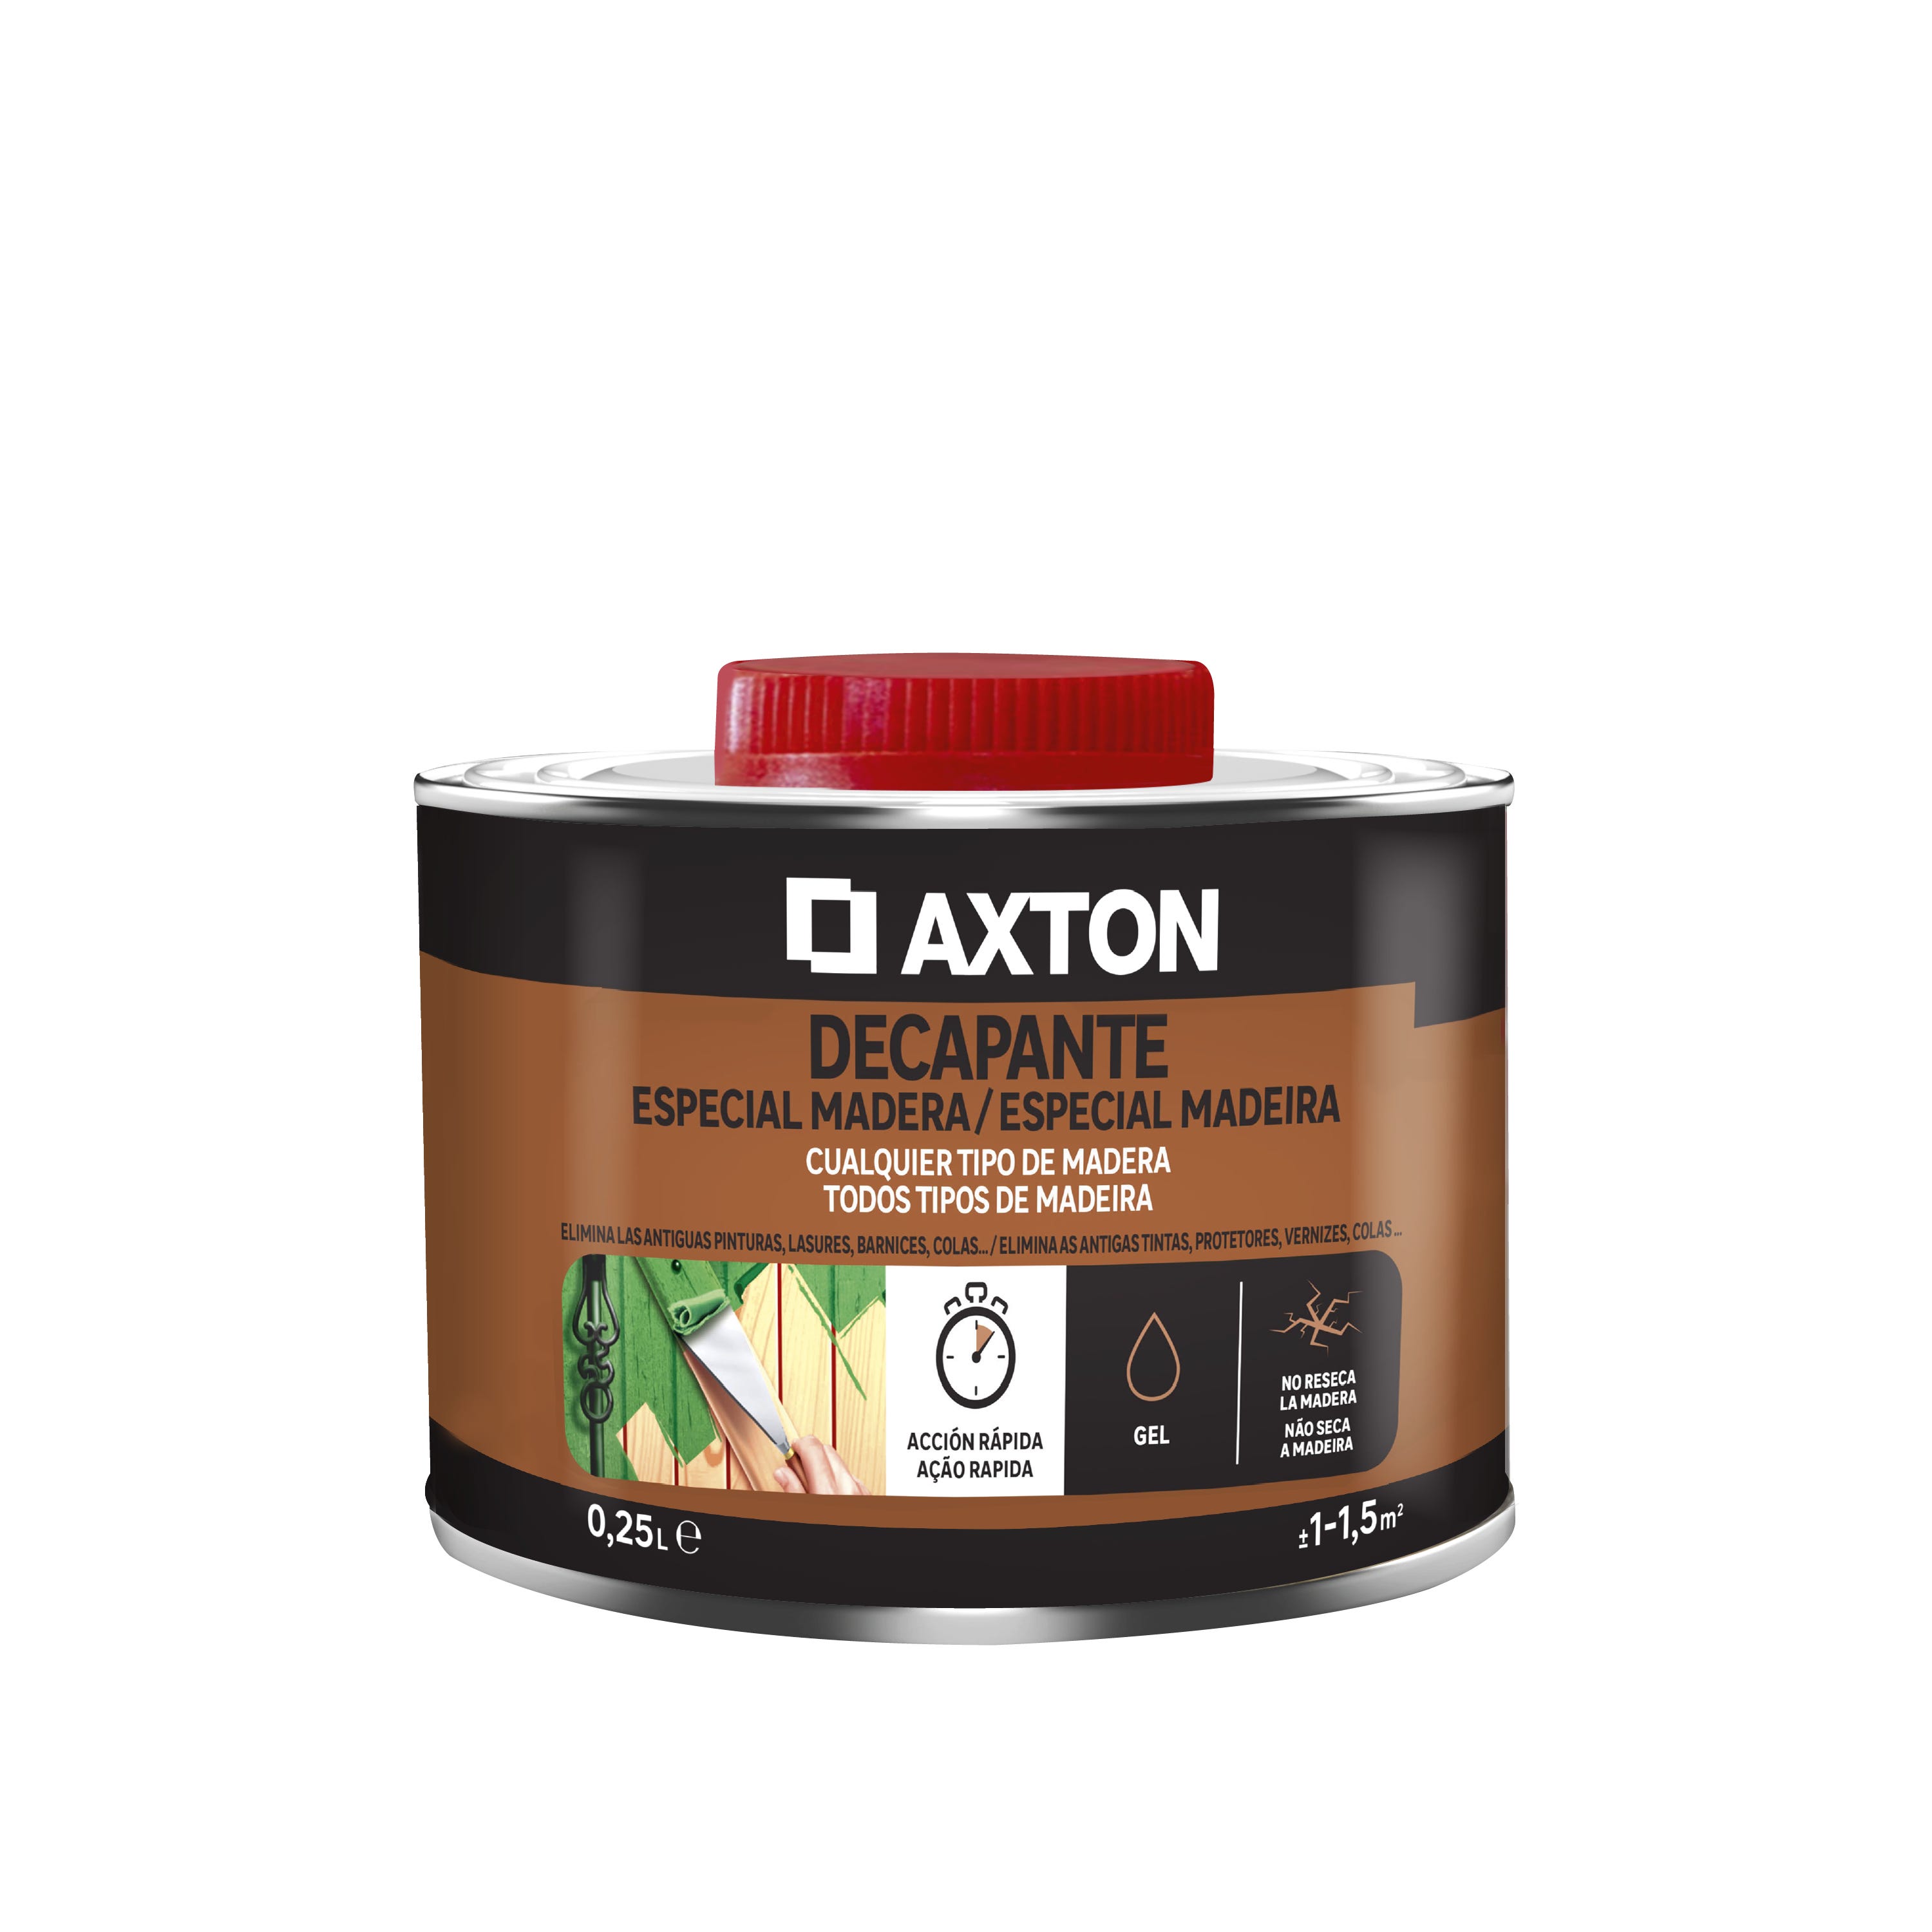 Decapante especial madera AXTON 0,25l